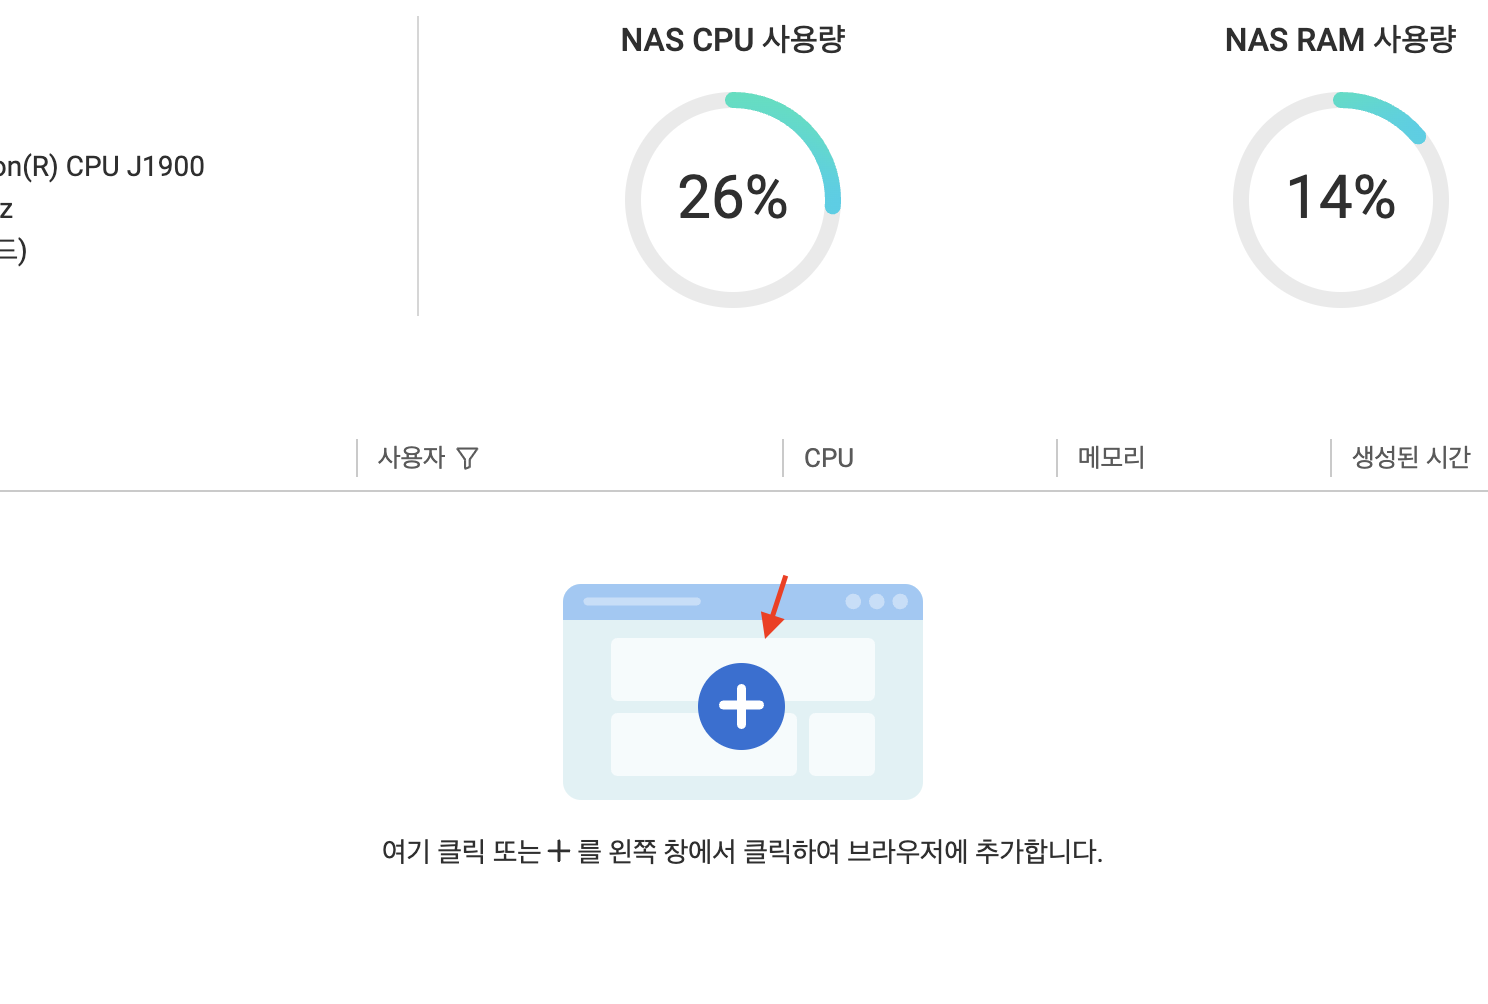 QNAP NAS Browser station 사용방법